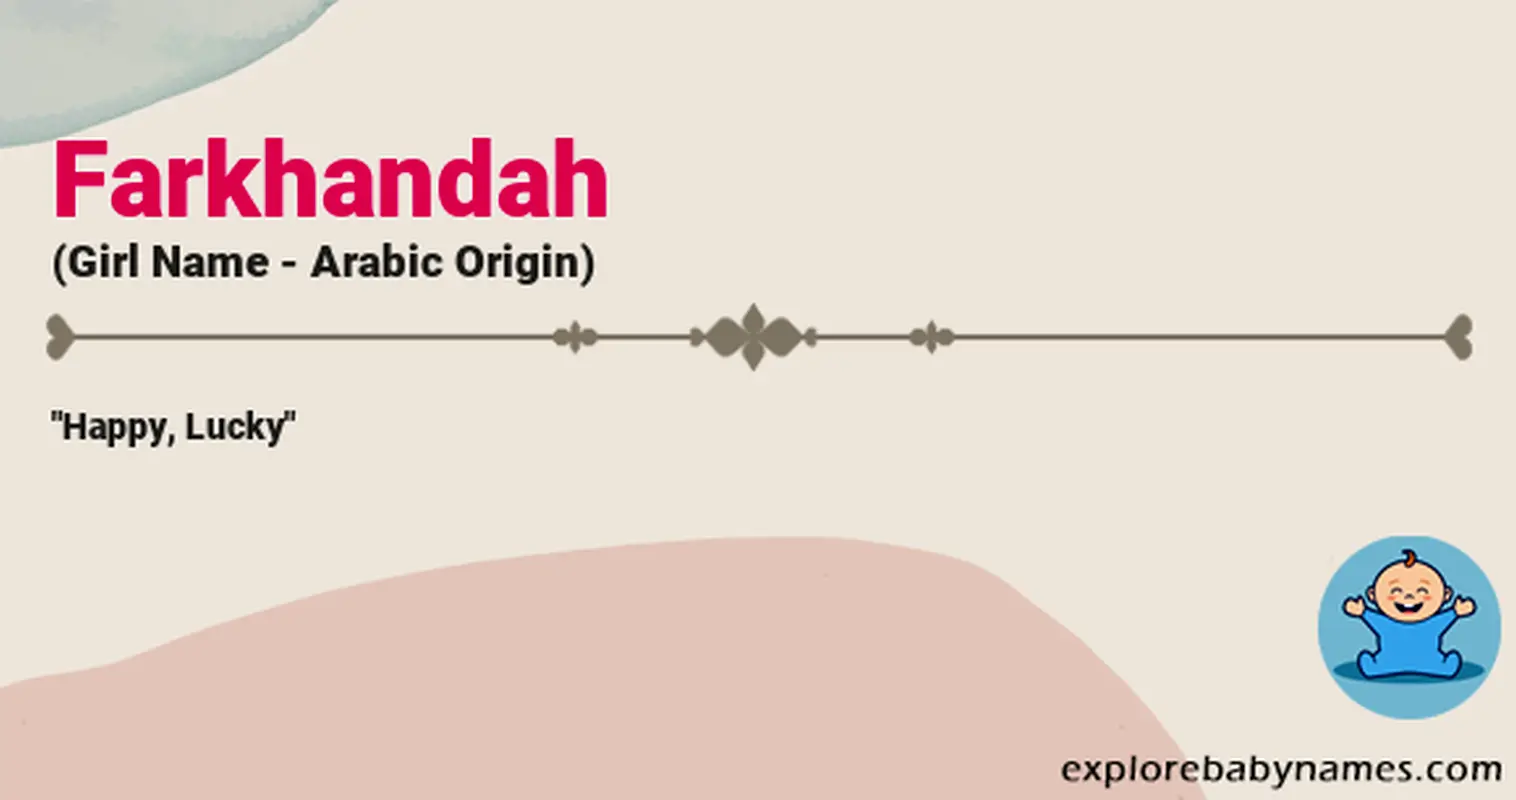 Meaning of Farkhandah